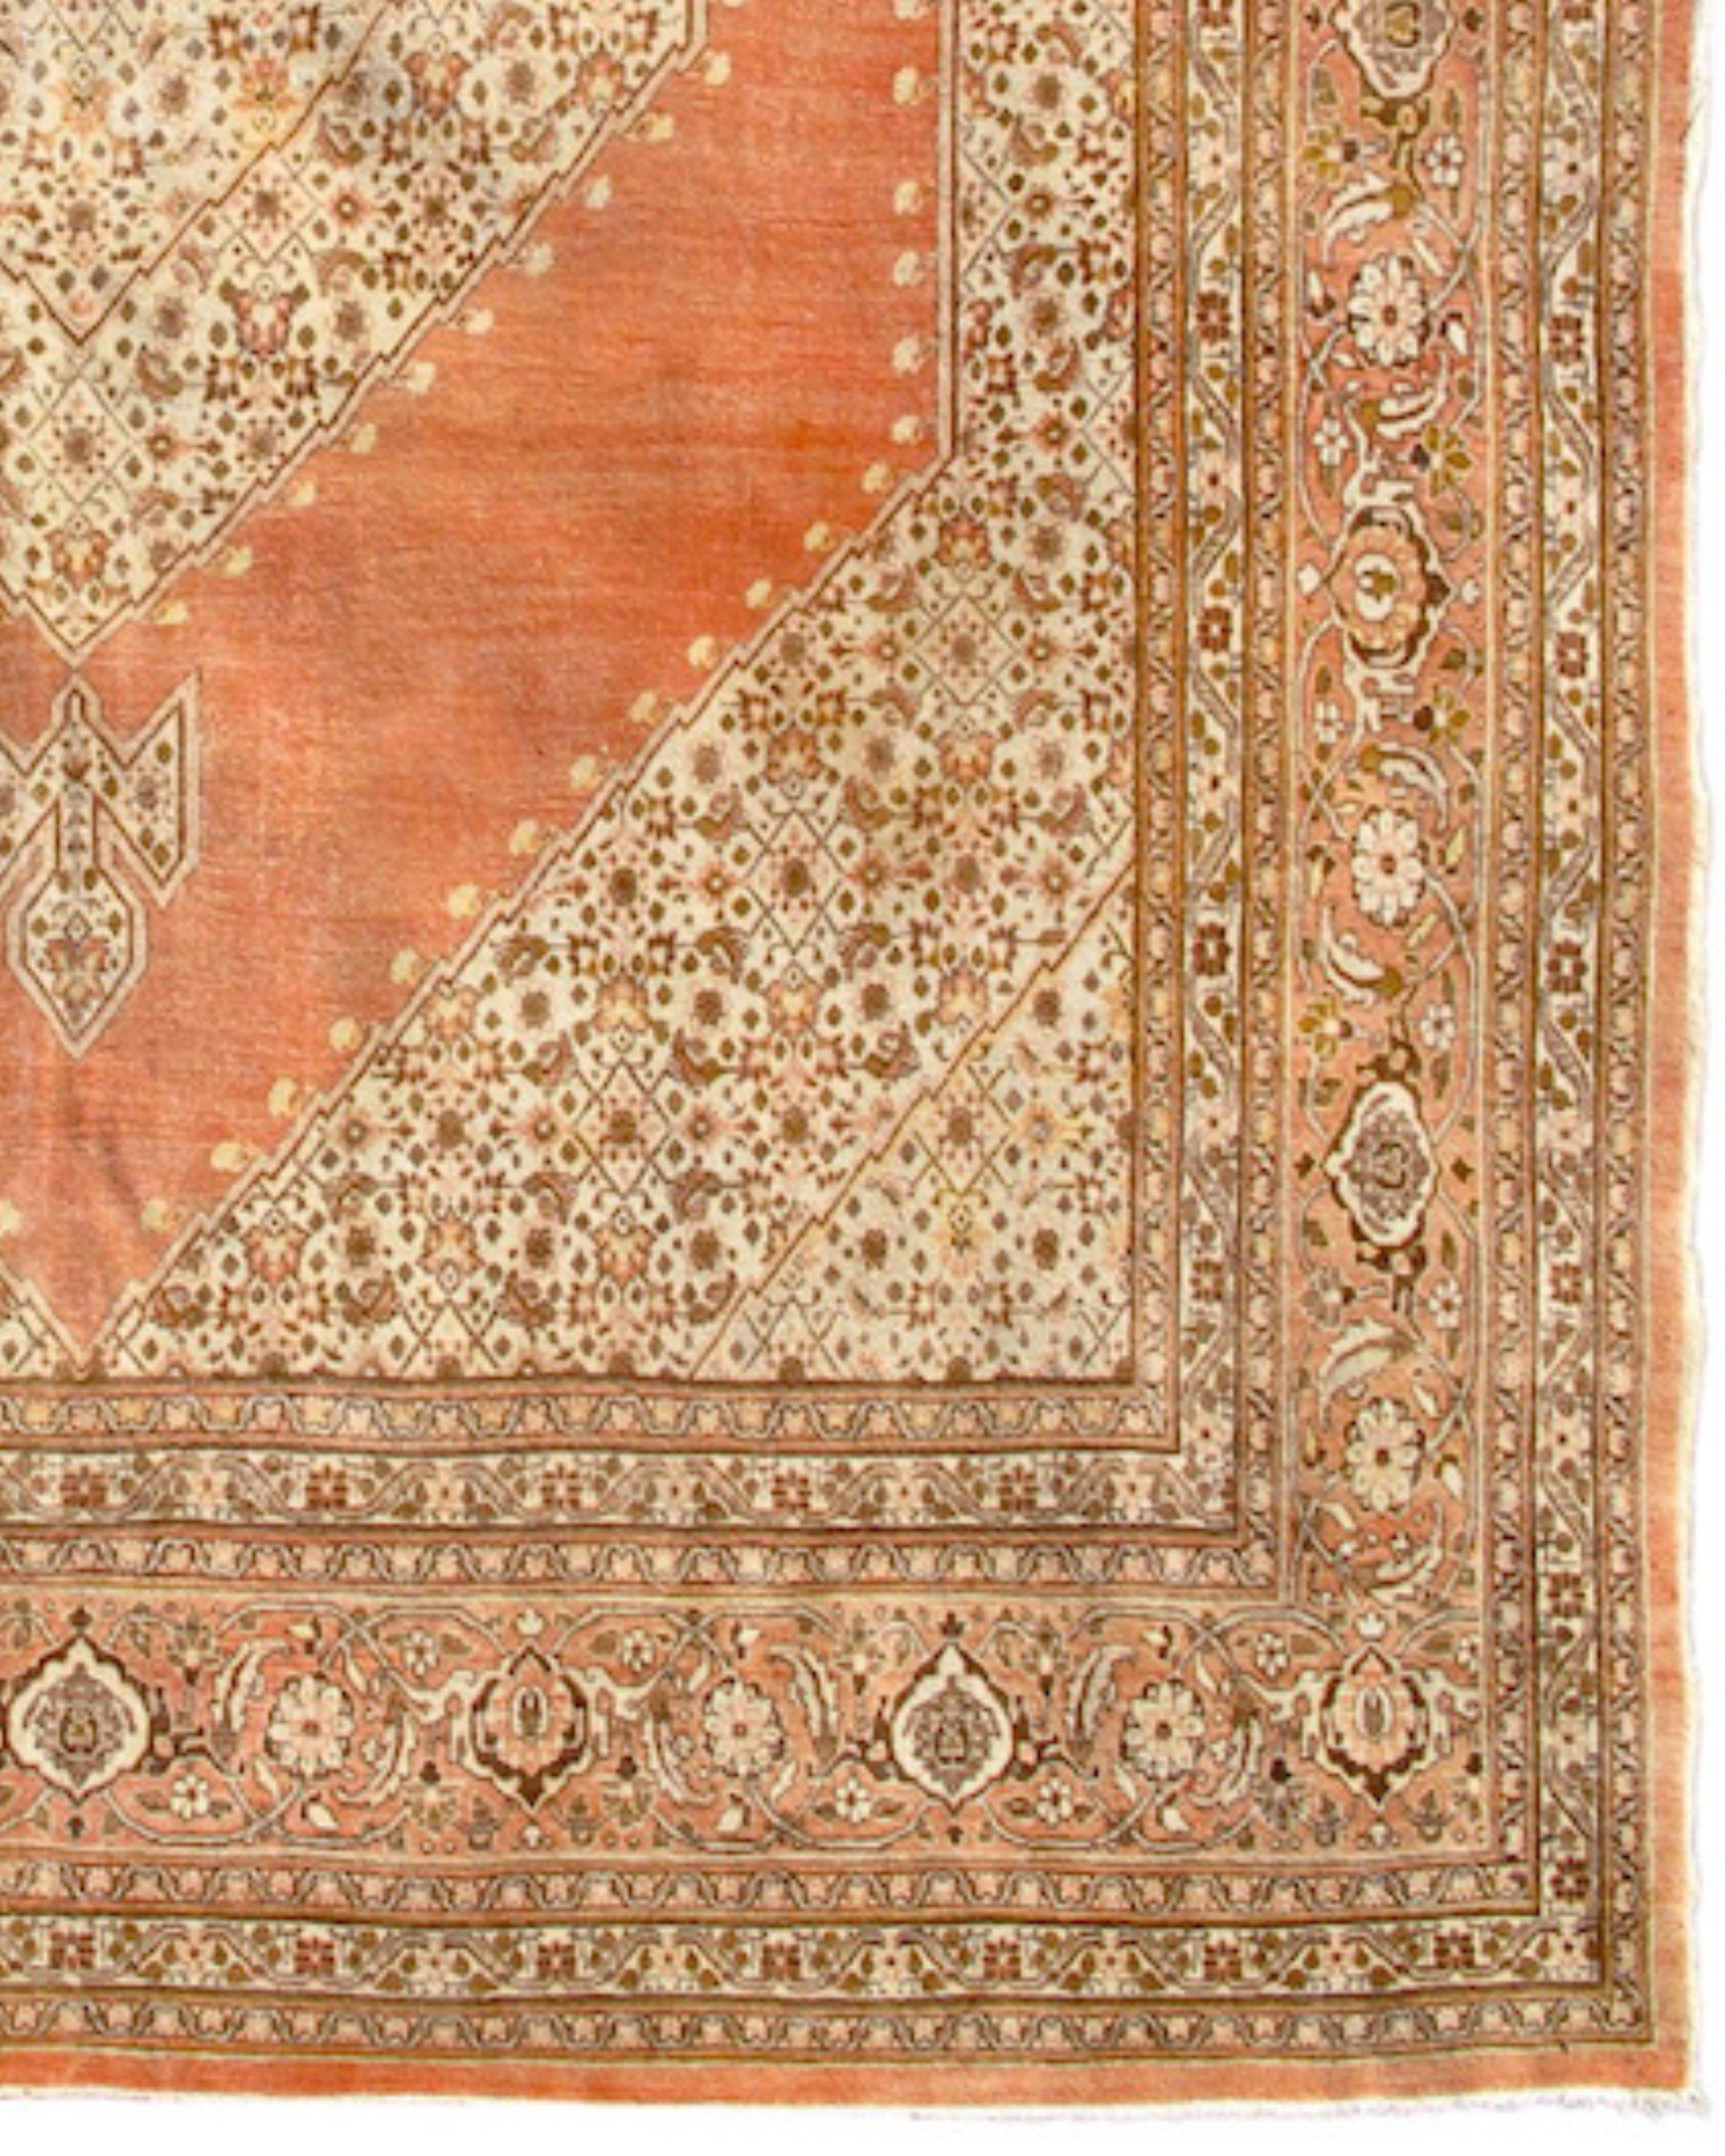 Tapis persan ancien de Tabriz, c. 1900

Cet élégant tapis de Tabriz équilibre les espaces ouverts avec des zones de dessin finement détaillées et précises composées dans une douce palette de tons harmonieux et moelleux de crèmes et d'ocres. Ces